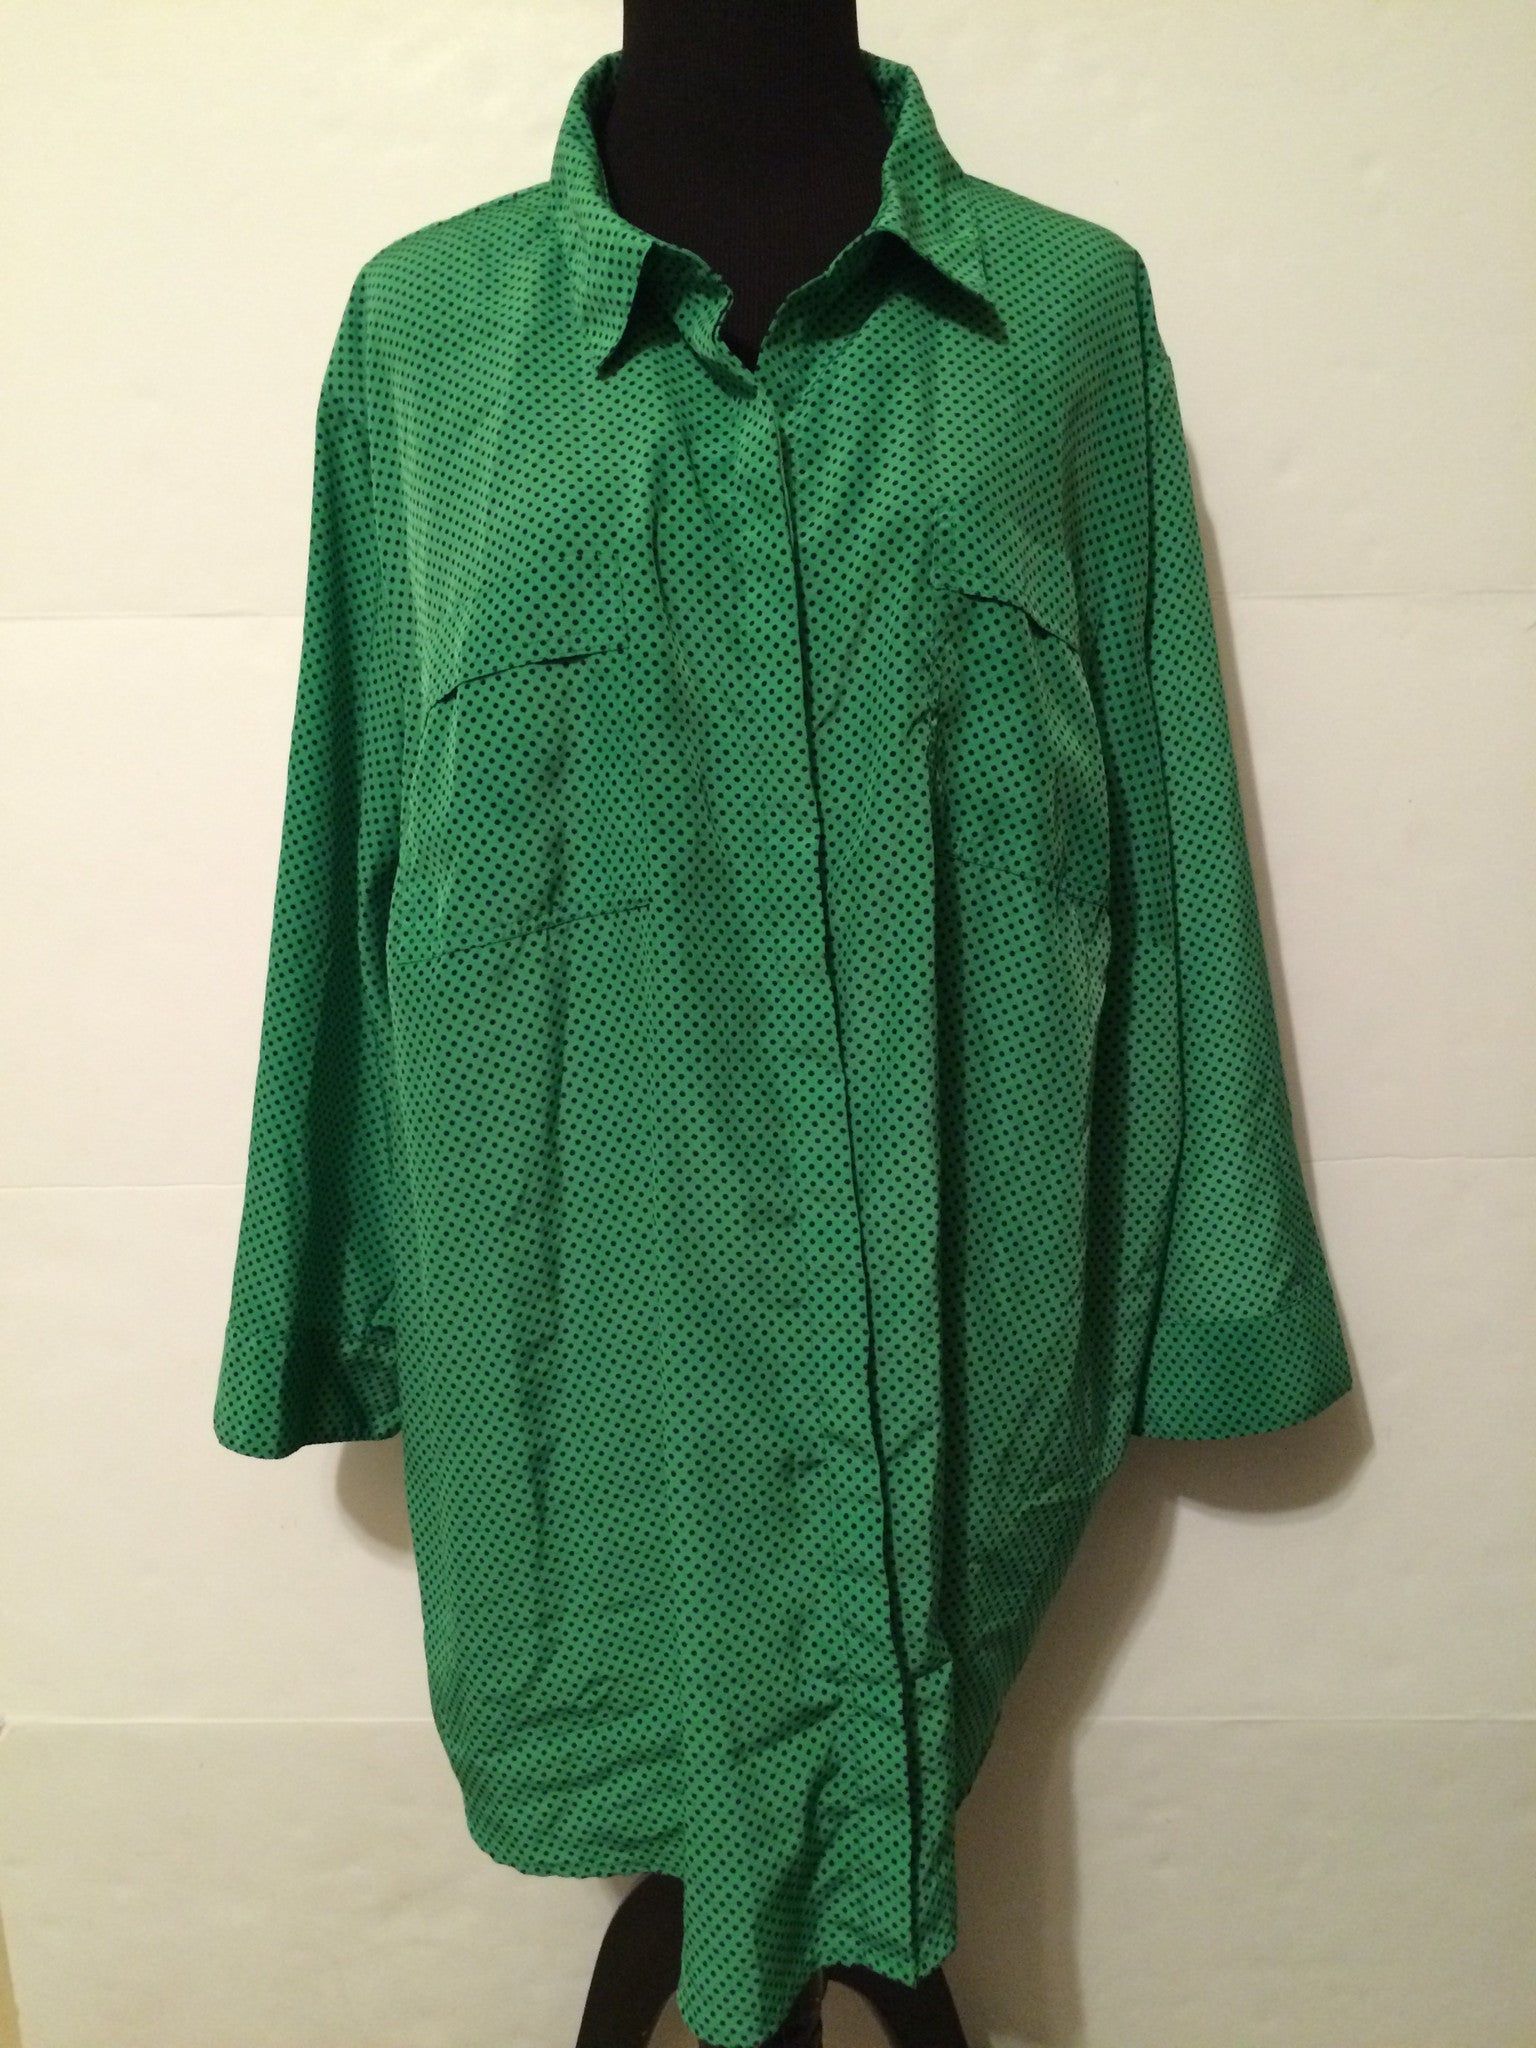 Plus Size Vintage Green Polka Dot Blouse Size 3X